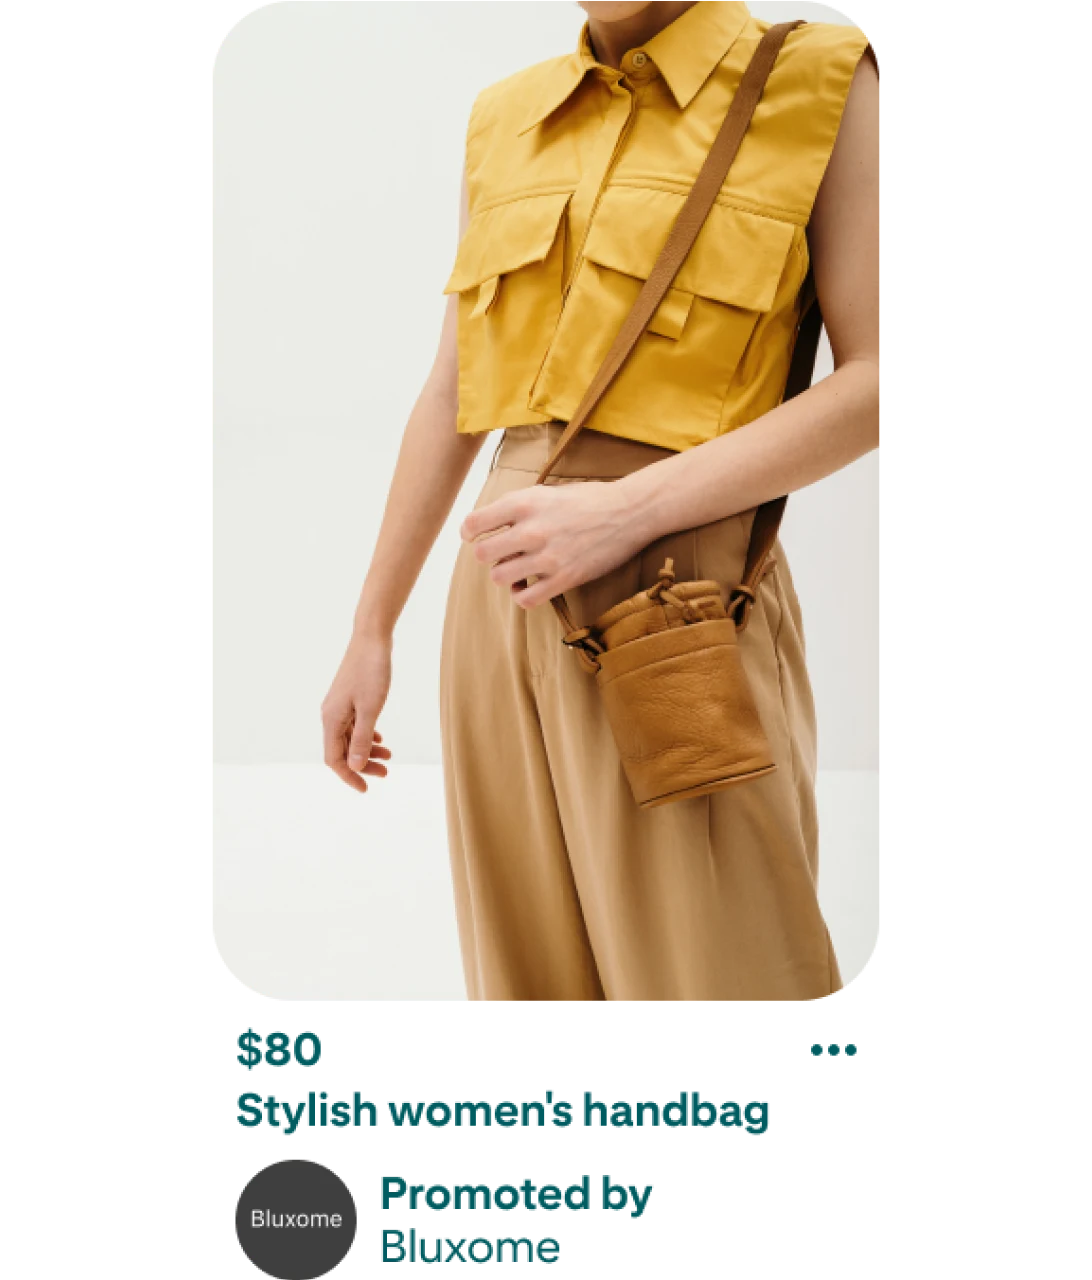 Kép egy női táskát eladásra kínáló pinről. A pinen egy barna táskát viselő személy látható. A táska hosszú pánttal rendelkezik, amely a személy vállára van akasztva. A képen látható személy egy galléros, ujj nélküli, sárga inget visel, felülről lefelé szűkülő, khaki színű nadrággal. A személyről készült kép alatt a táska ára és leírása látható. A feltüntetett ár 80 dollár, és a leírás így szól: „Stílusos női táska, hirdető: Bluxome”. 